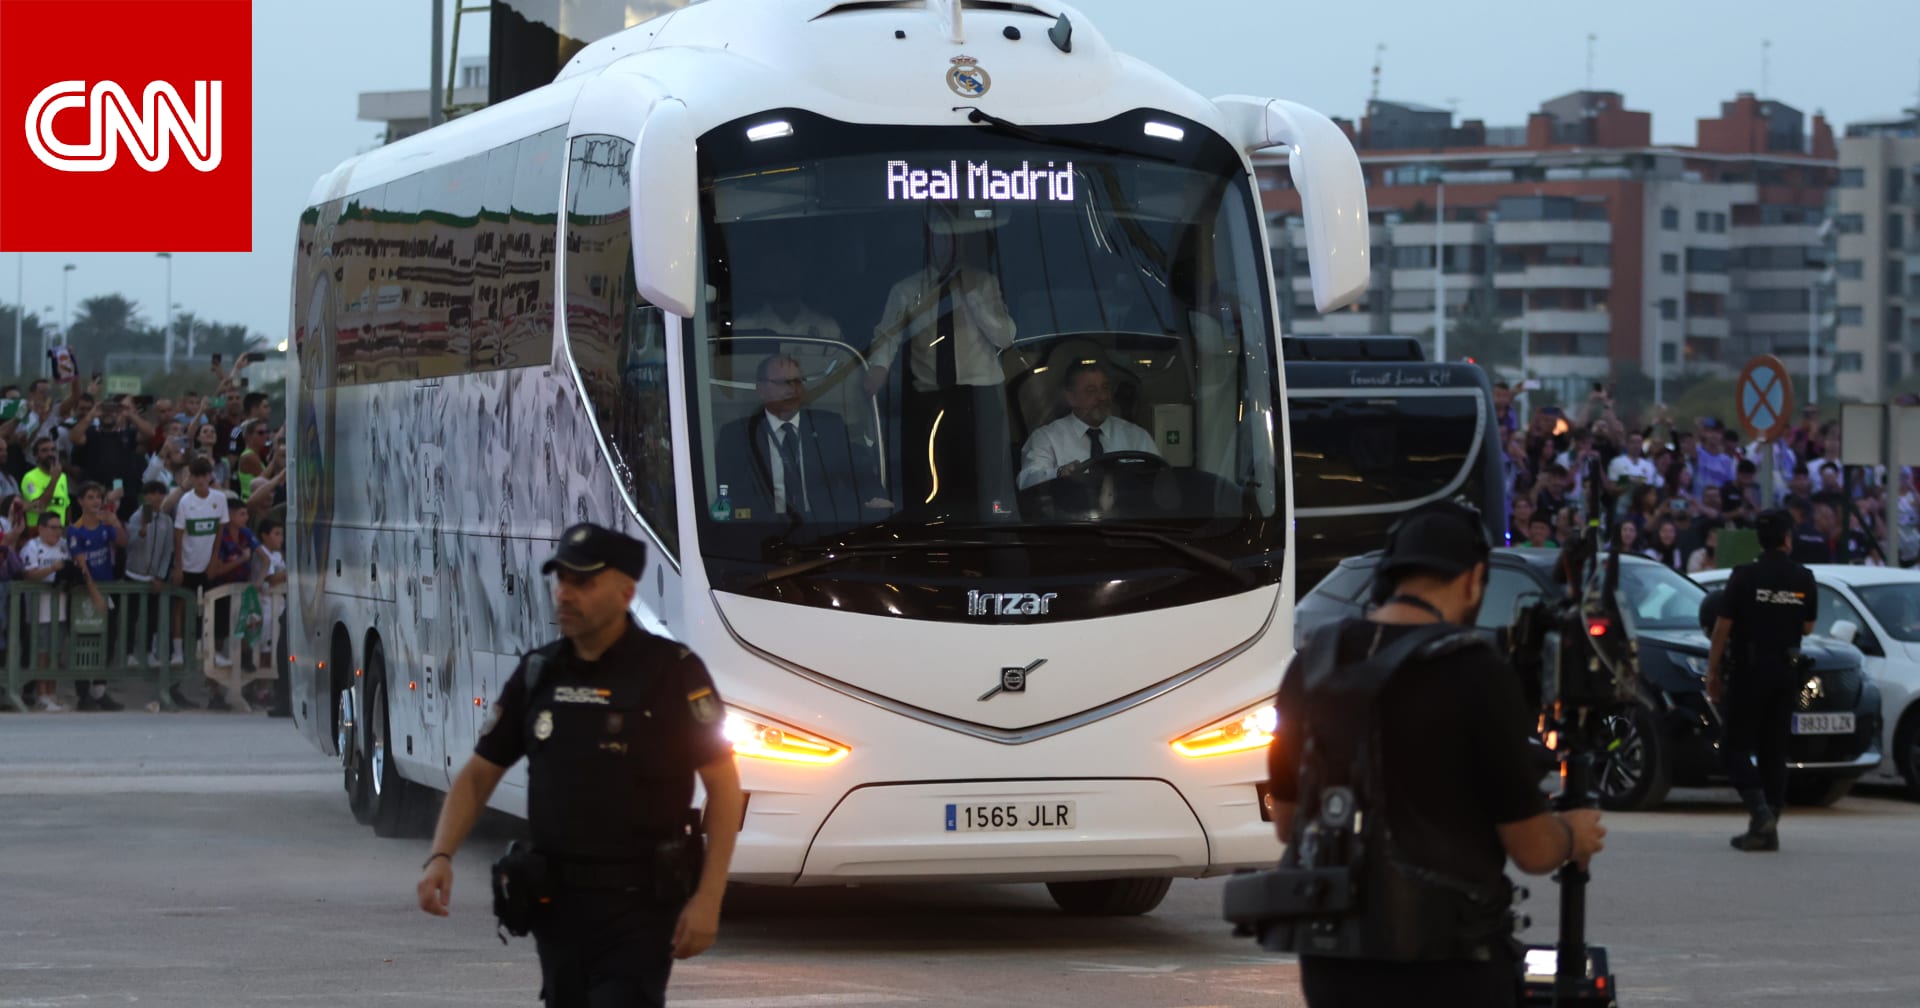 بعد تداول فيديو "سرقة حافلة ريال مدريد" في السعودية.. الأمن العام يُعلق